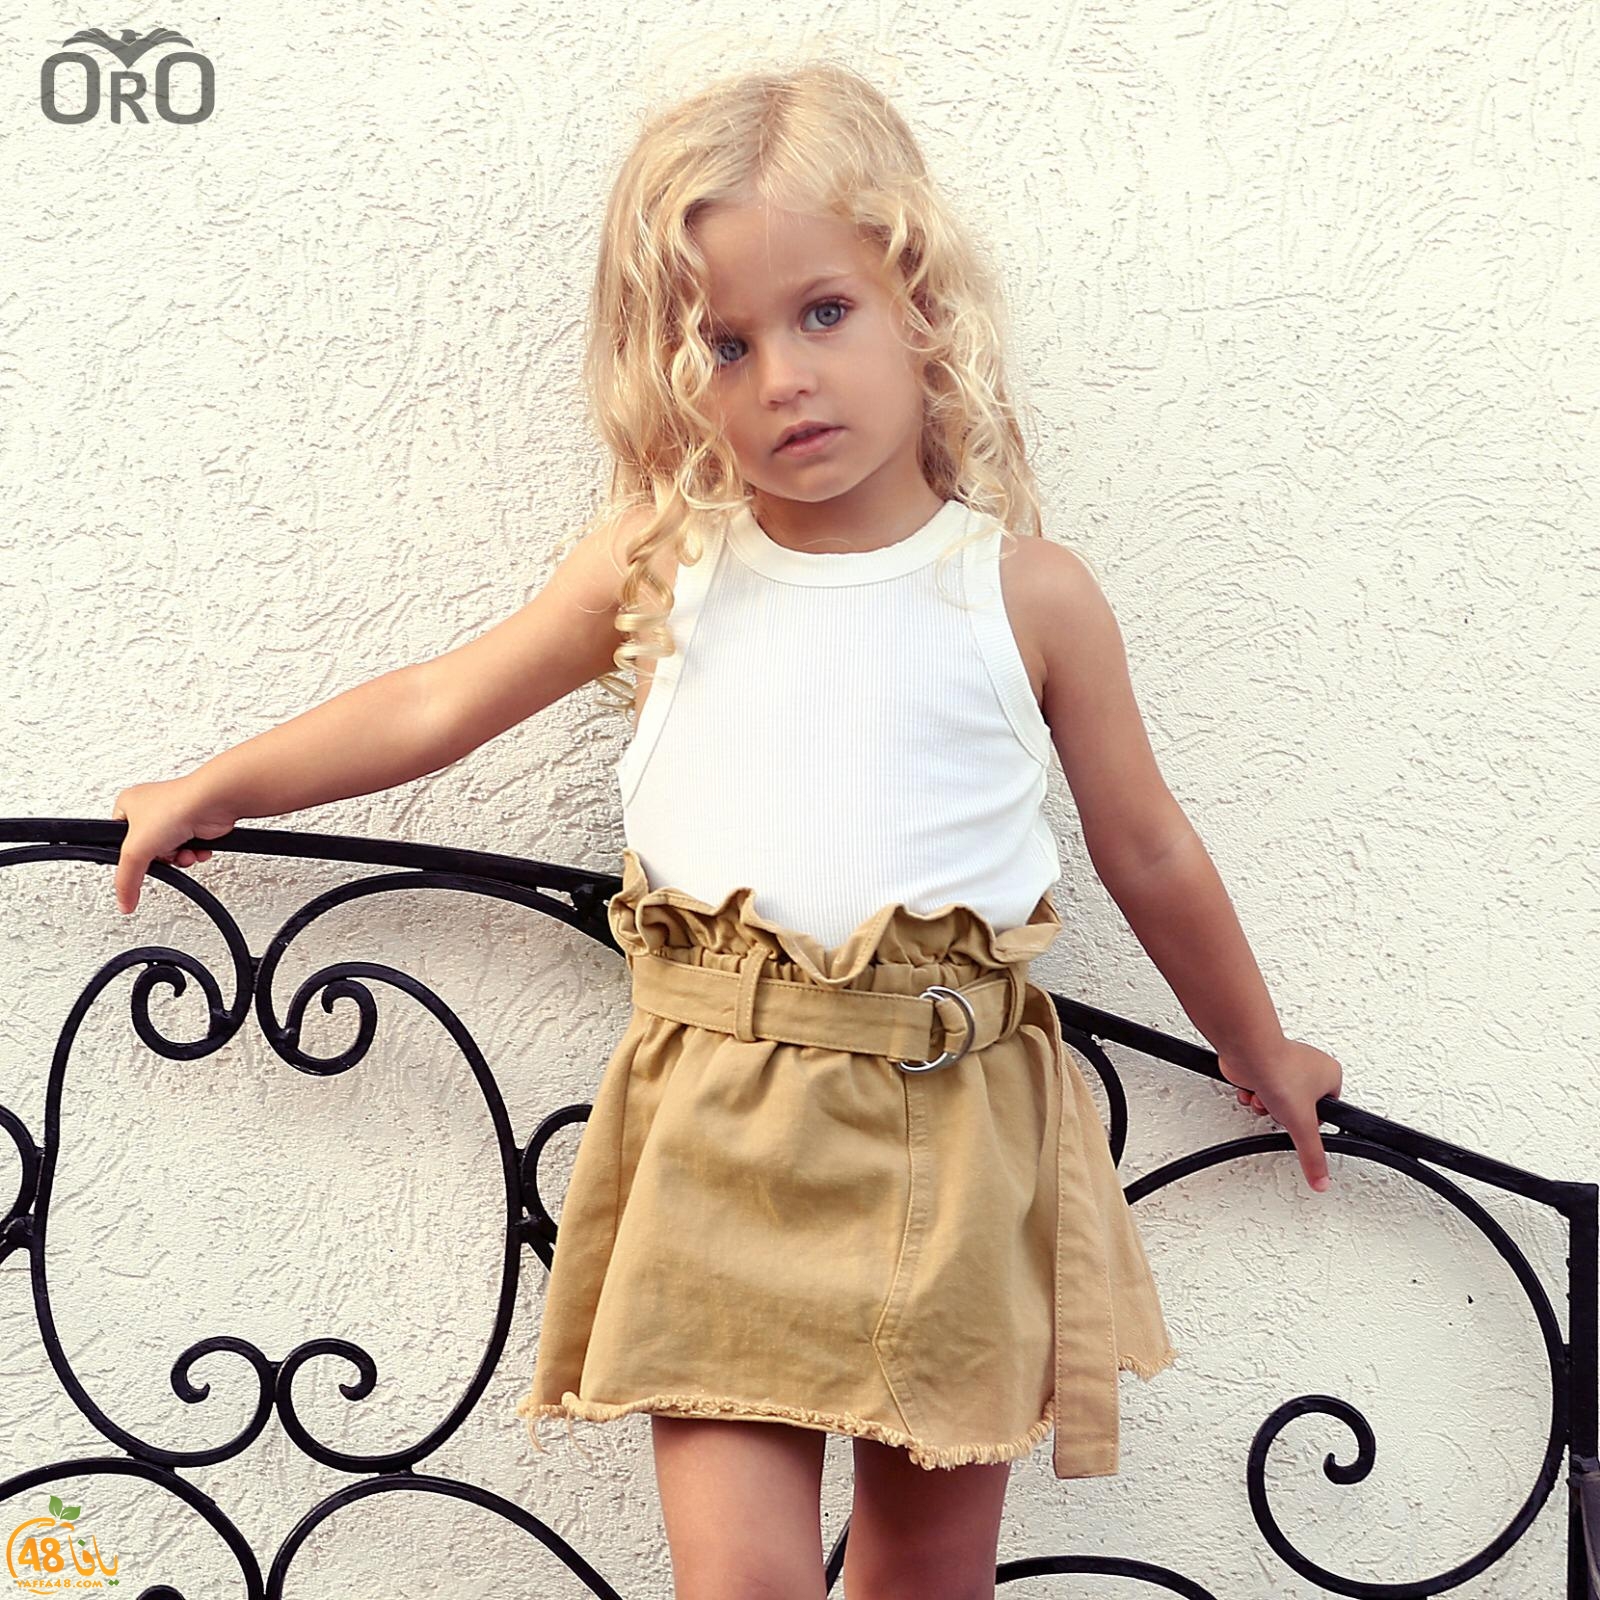  الرملة: تشكيلة واسعة من الملابس الصيفية للأطفال في بوتيك Top Brands  